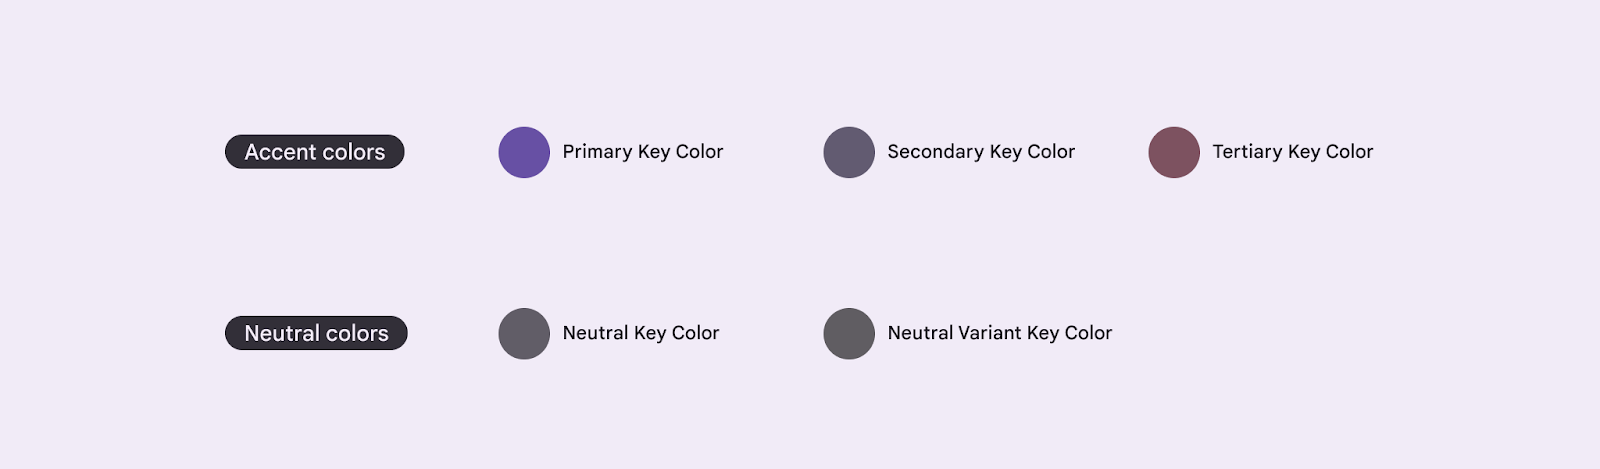 پنج رنگ کلیدی پایه برای ایجاد یک تم M3.